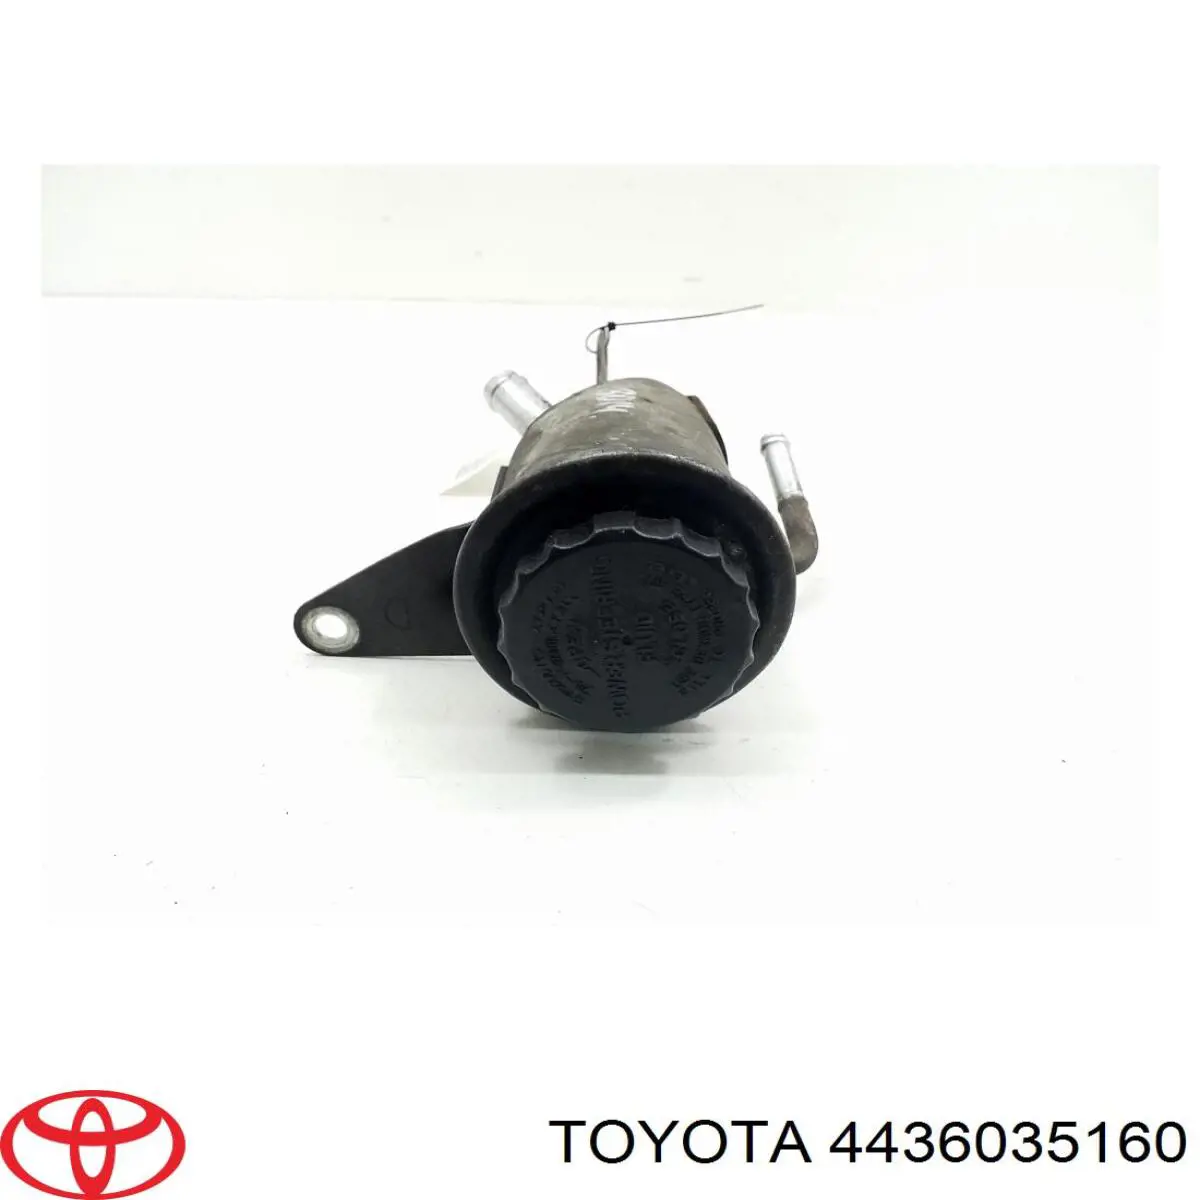 Depósito de bomba de dirección hidráulica para Toyota Land Cruiser (J9)